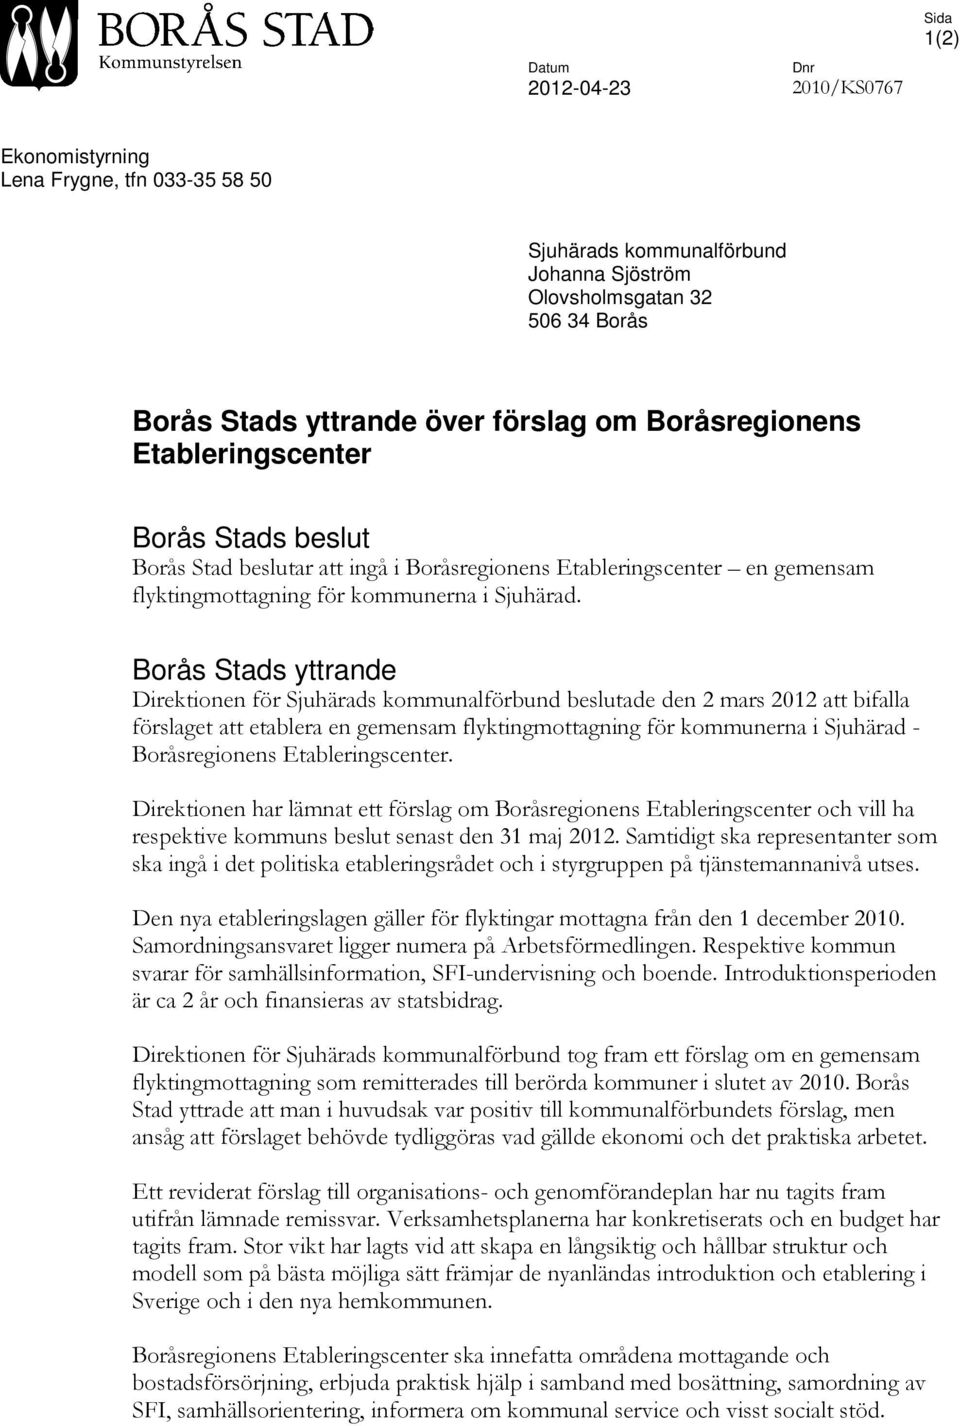 Borås Stads yttrande Direktionen för Sjuhärads kommunalförbund beslutade den 2 mars 2012 att bifalla förslaget att etablera en gemensam flyktingmottagning för kommunerna i Sjuhärad - Boråsregionens